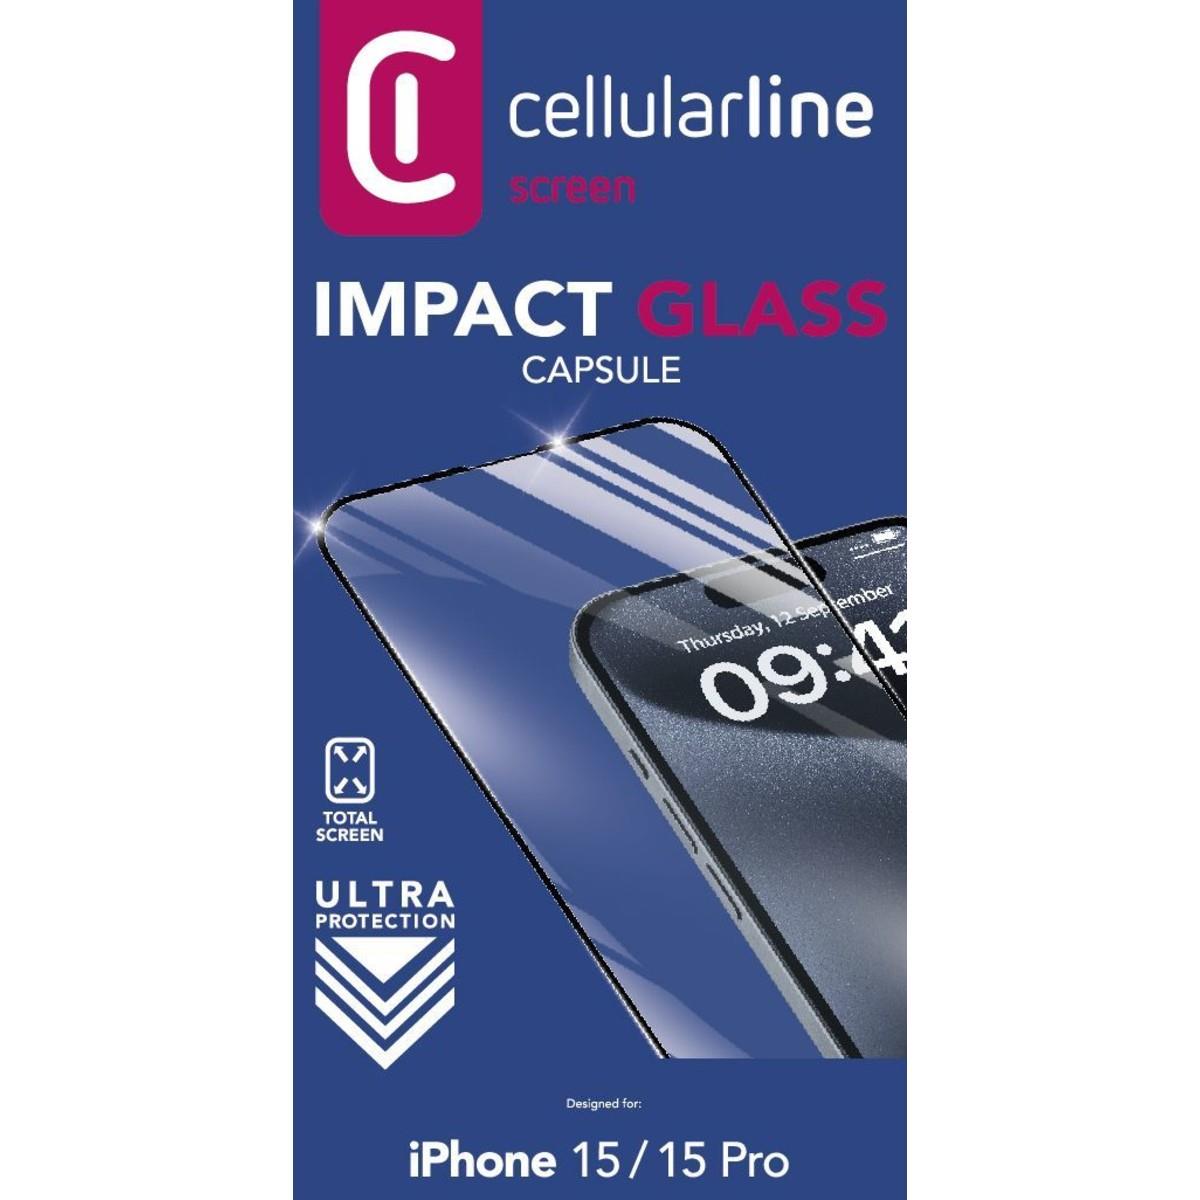 Schutzglas IMPACT GLASS CAPSULE für Apple iPhone 15/15 Pro